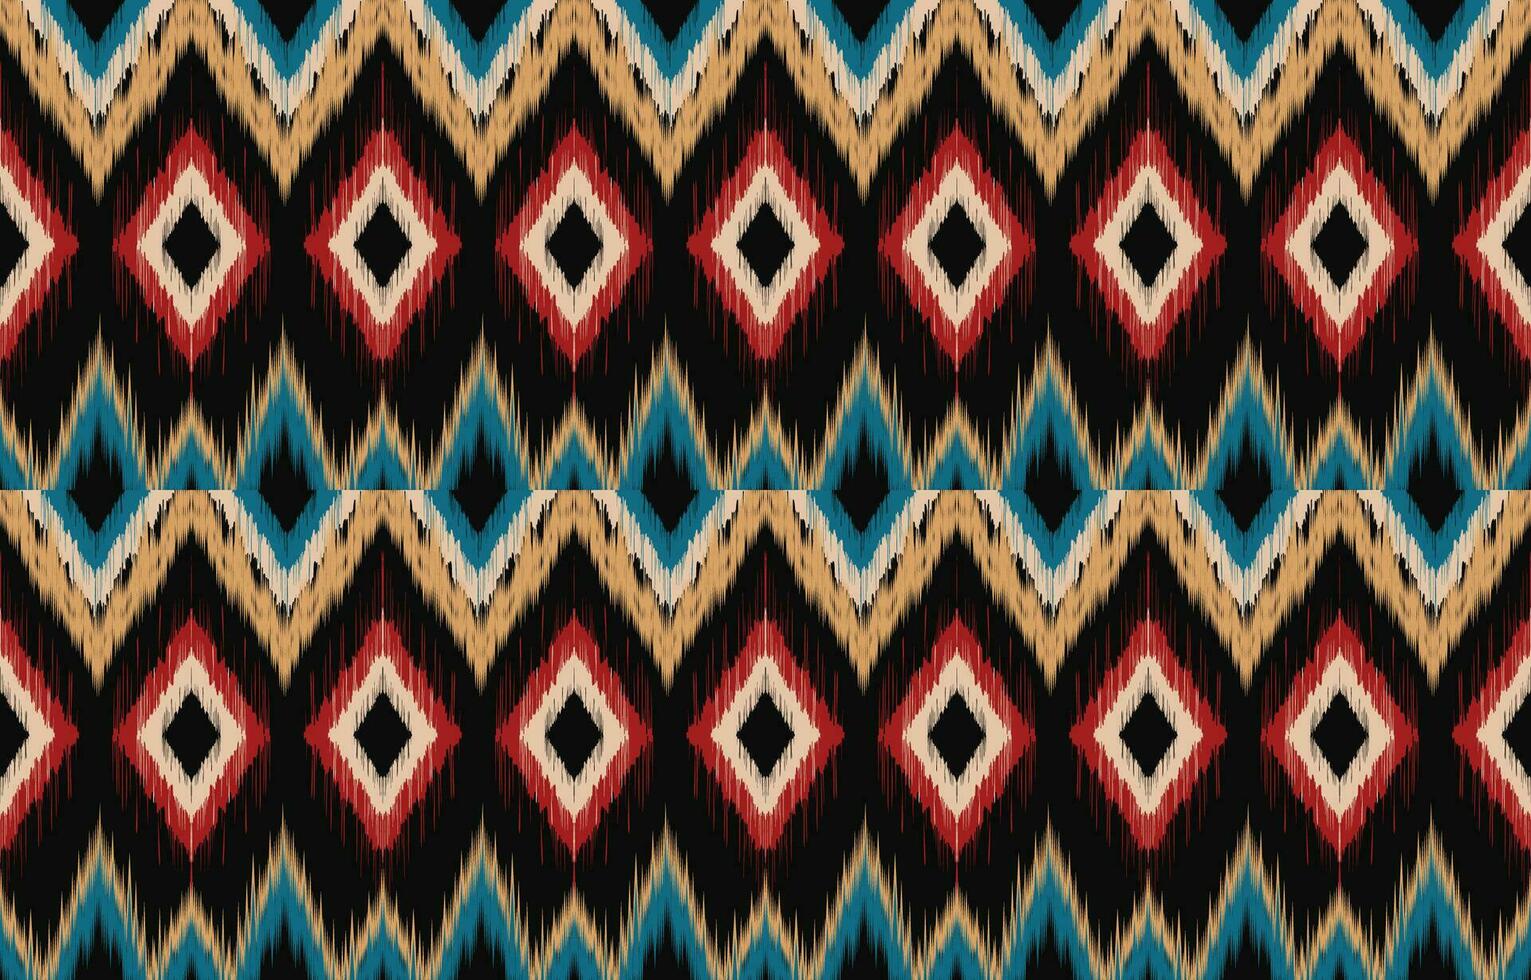 etnisk abstrakt ikat konst. aztec prydnad skriva ut. geometrisk etnisk mönster sömlös Färg orientalisk. design för bakgrund ,ridå, matta, tapet, Kläder, omslag, batik, vektor illustration.